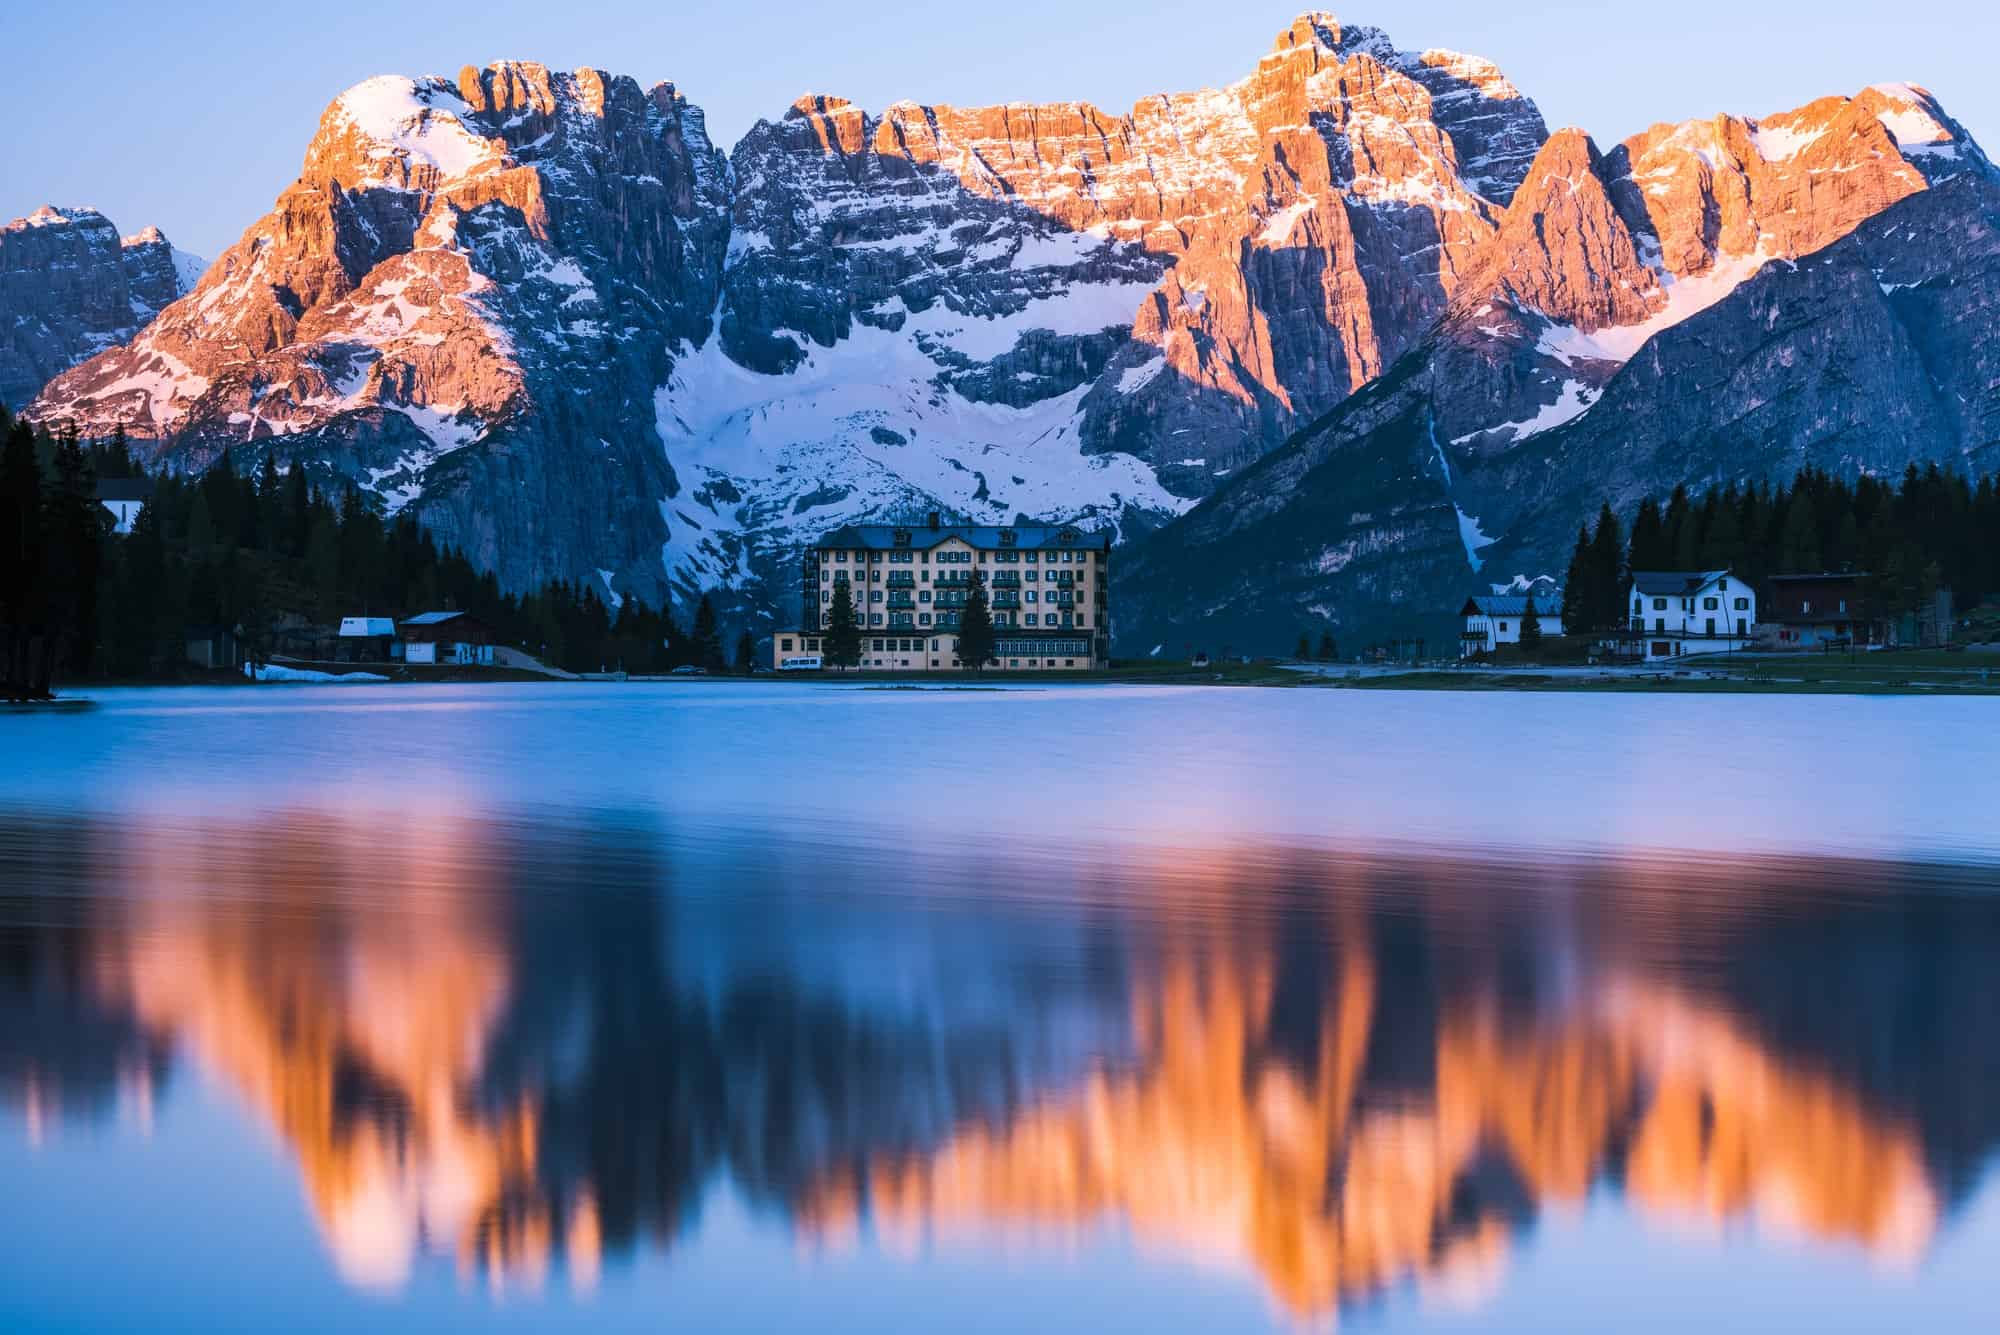 Spectacular sunrise over Misurina Lake in Italy,Dolomites mounta